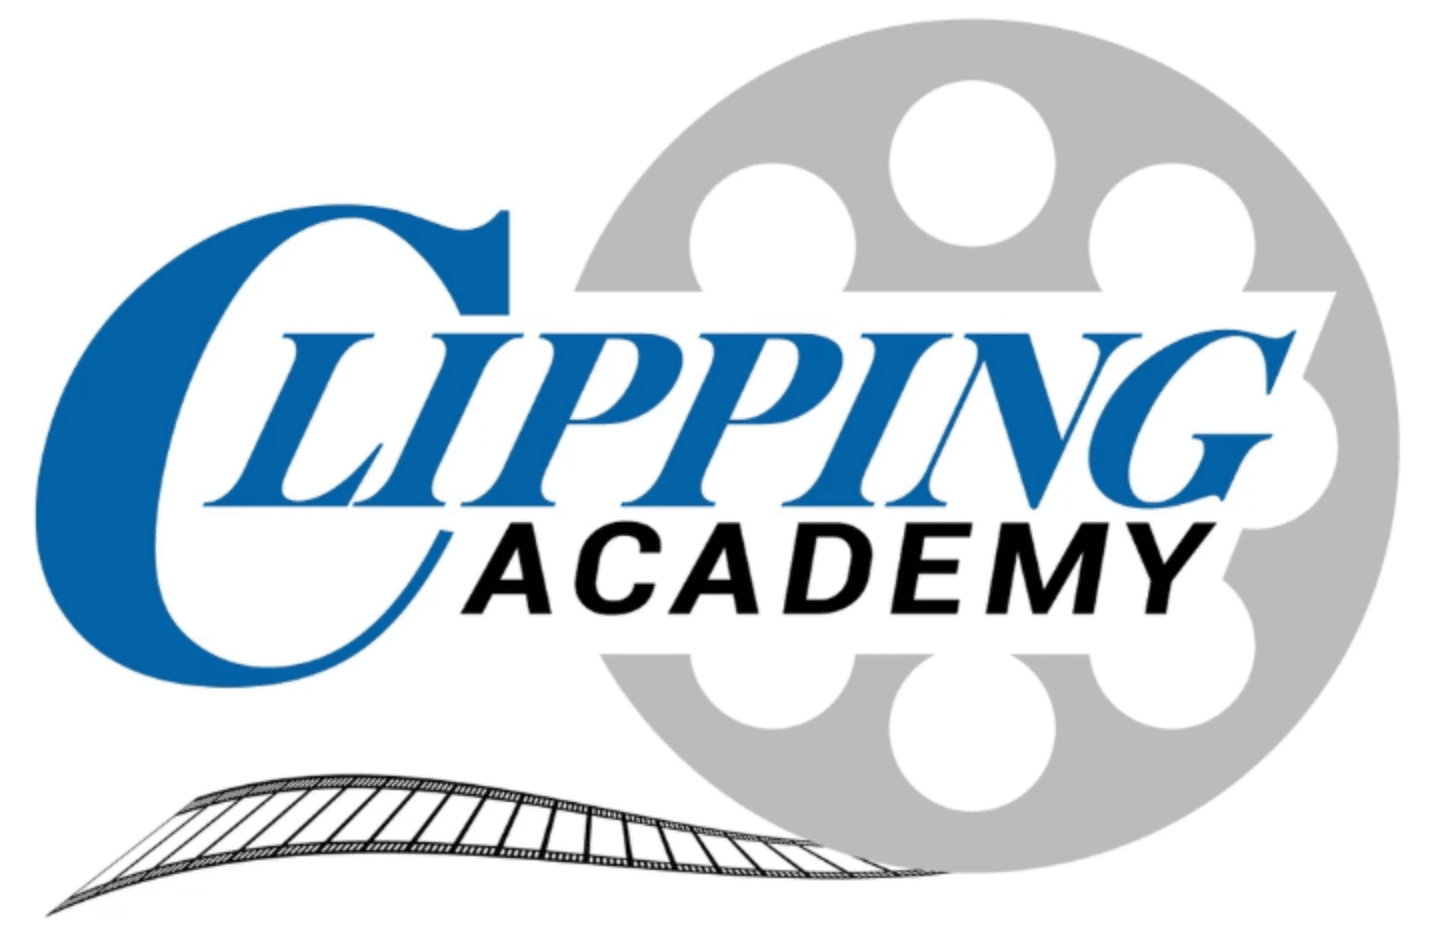 Clipping Academy Logo